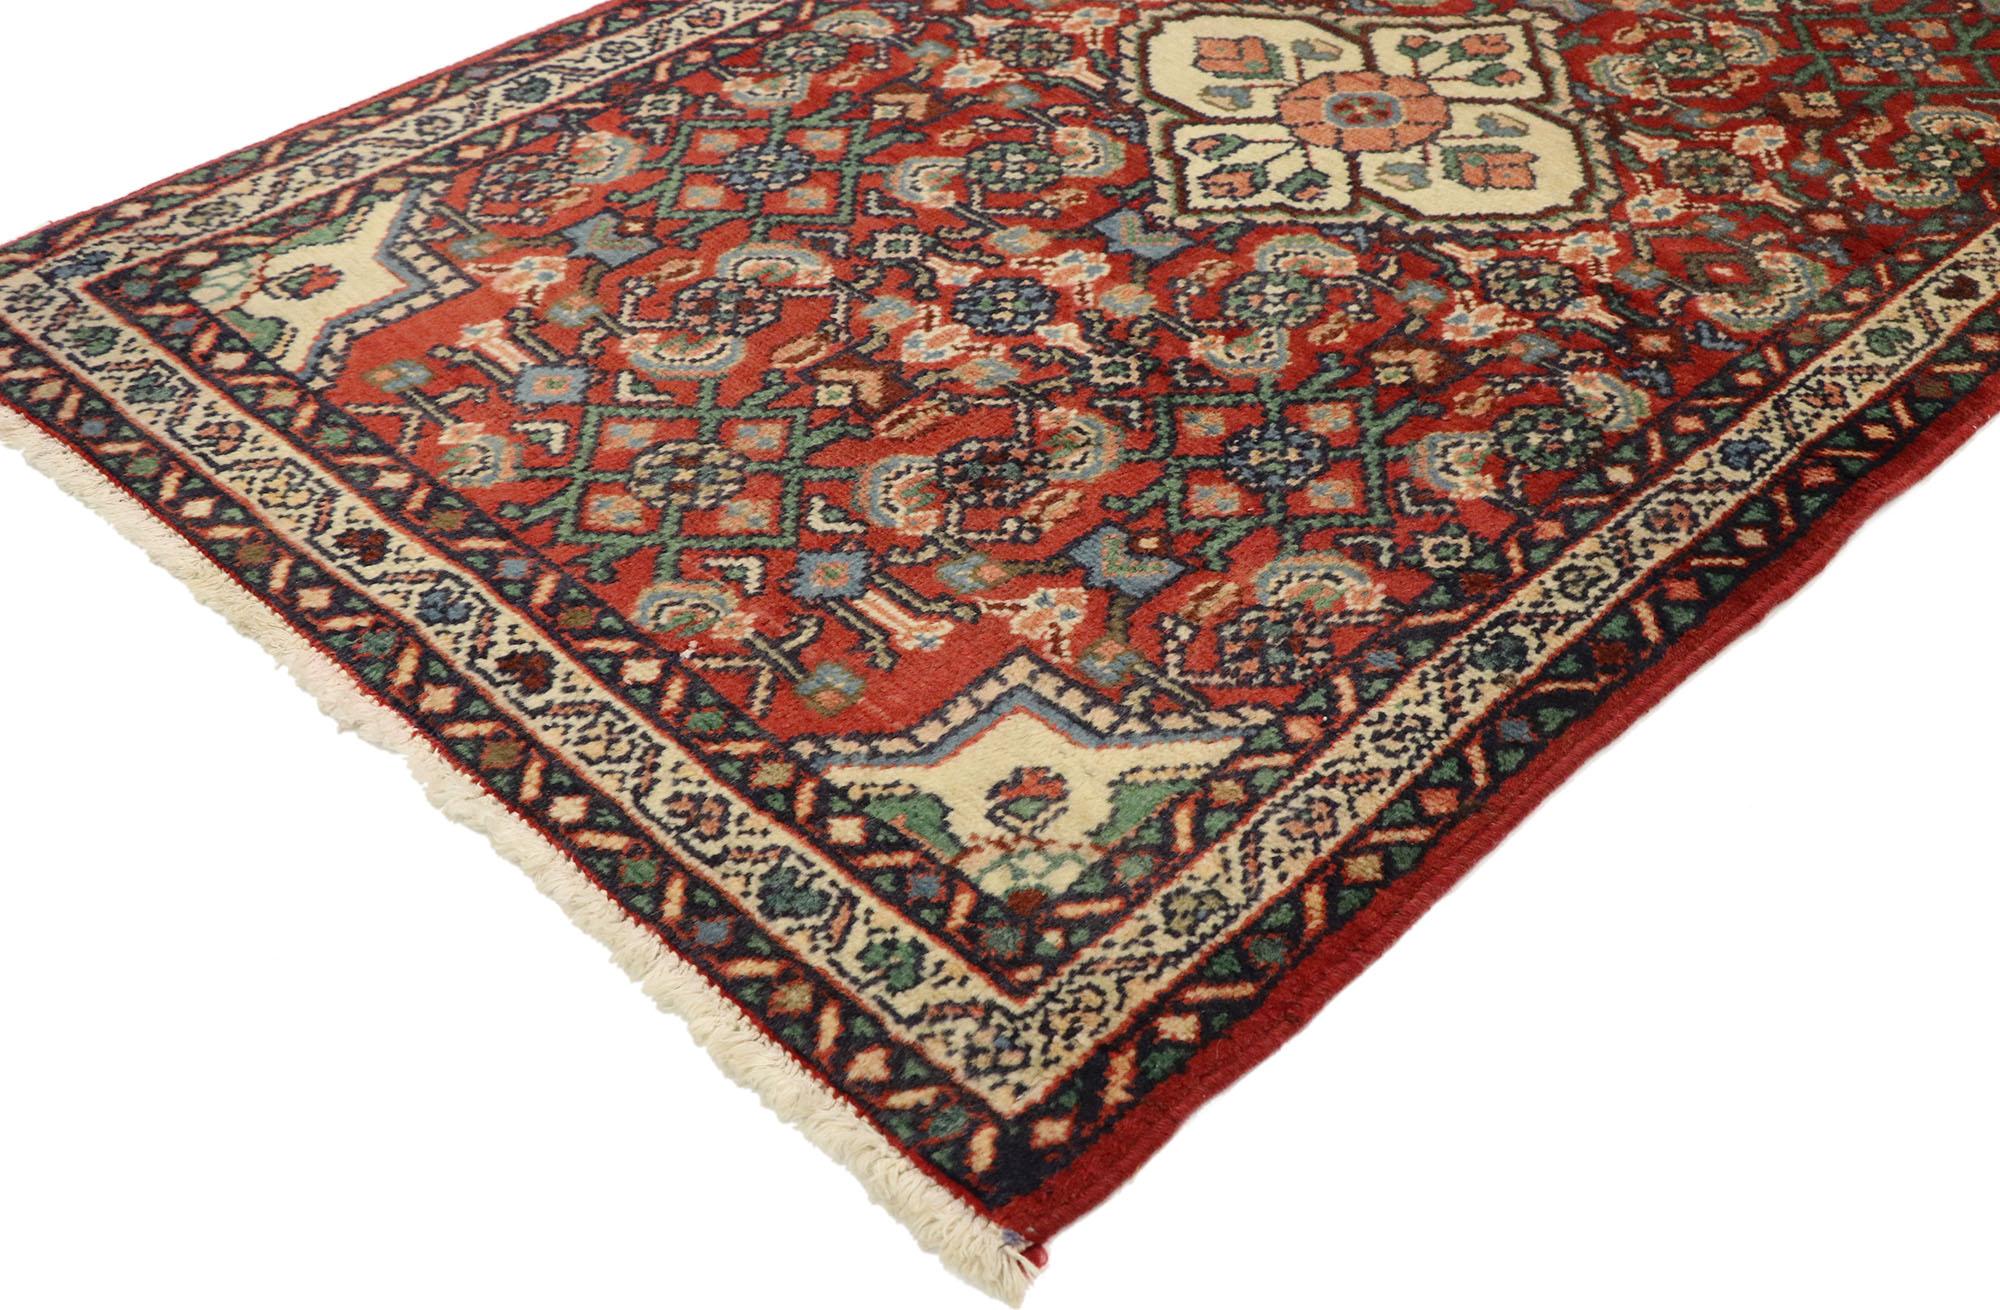 76076, tapis persan vintage Dergazine Hamadan avec motif Herati, tapis de foyer ou d'entrée. Ce tapis d'accent Persan vintage Hamadan en laine nouée à la main présente un médaillon central avec un motif Herati sur toute la surface. Il est entouré